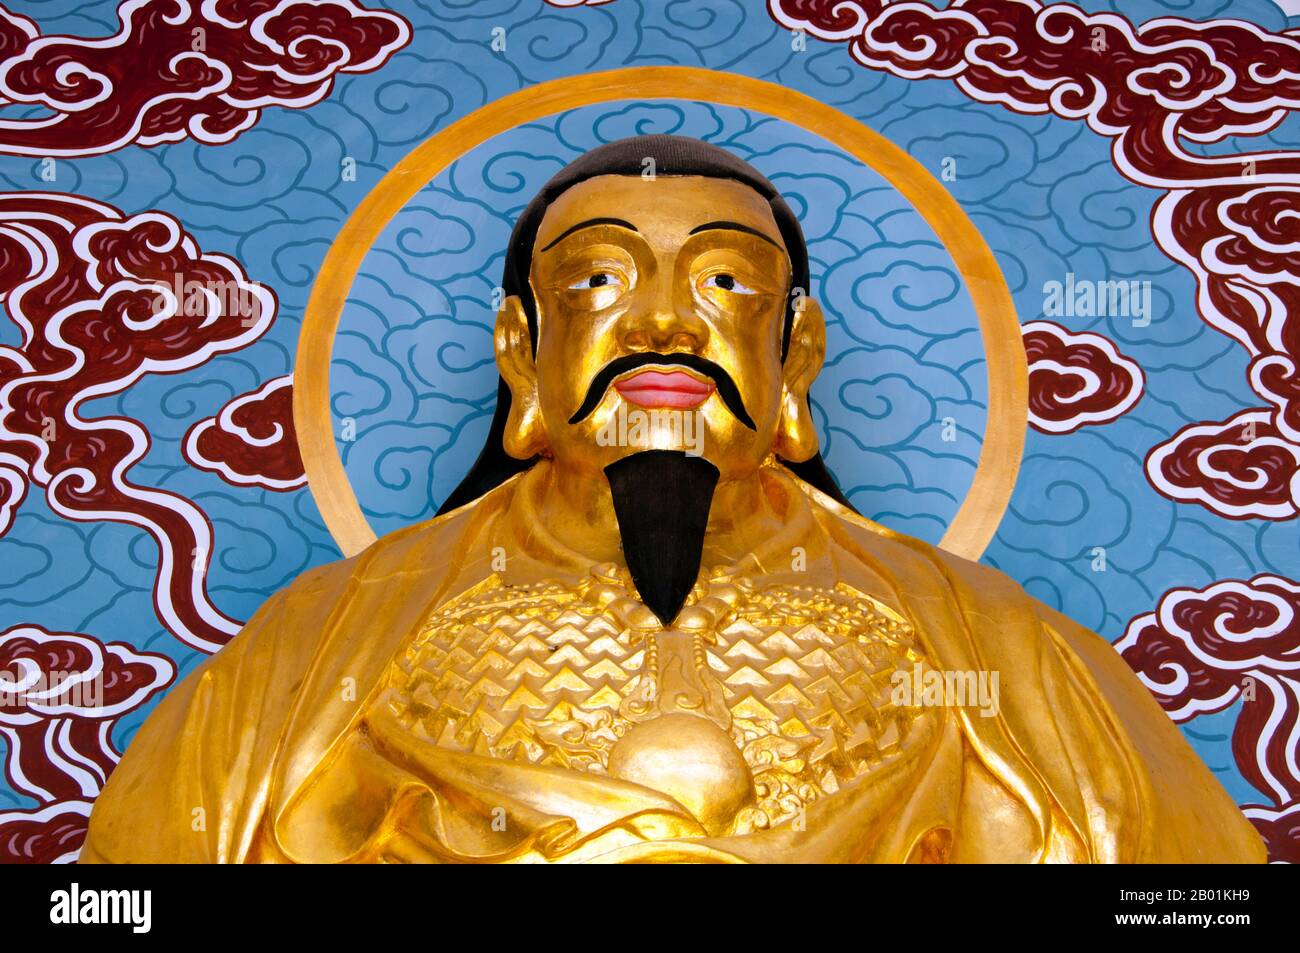 Chine : Xuan Wu (Dieu de la Terre du Nord) dans l'un des pavillons des hommes longs (porte du Dragon), Xishan (collines de l'Ouest), près de Kunming, province du Yunnan. Xuan Wu (le Martial sombre ou le Martial mystérieux), connu à titre posthume comme l'empereur supérieur céleste sombre ou mystérieux (Xuan Tian Shang Di), ainsi que le Grand empereur guerrier vrai (Zhen Wu Da Di), communément appelé Empereur du Nord (BEI Di) ou Empereur Seigneur (Di Gong), il est l'une des divinités taoïstes de rang supérieur, et l'une des divinités les plus vénérées en Chine. Xuan Wu est vénéré comme un dieu puissant, capable de contrôler les éléments. Banque D'Images